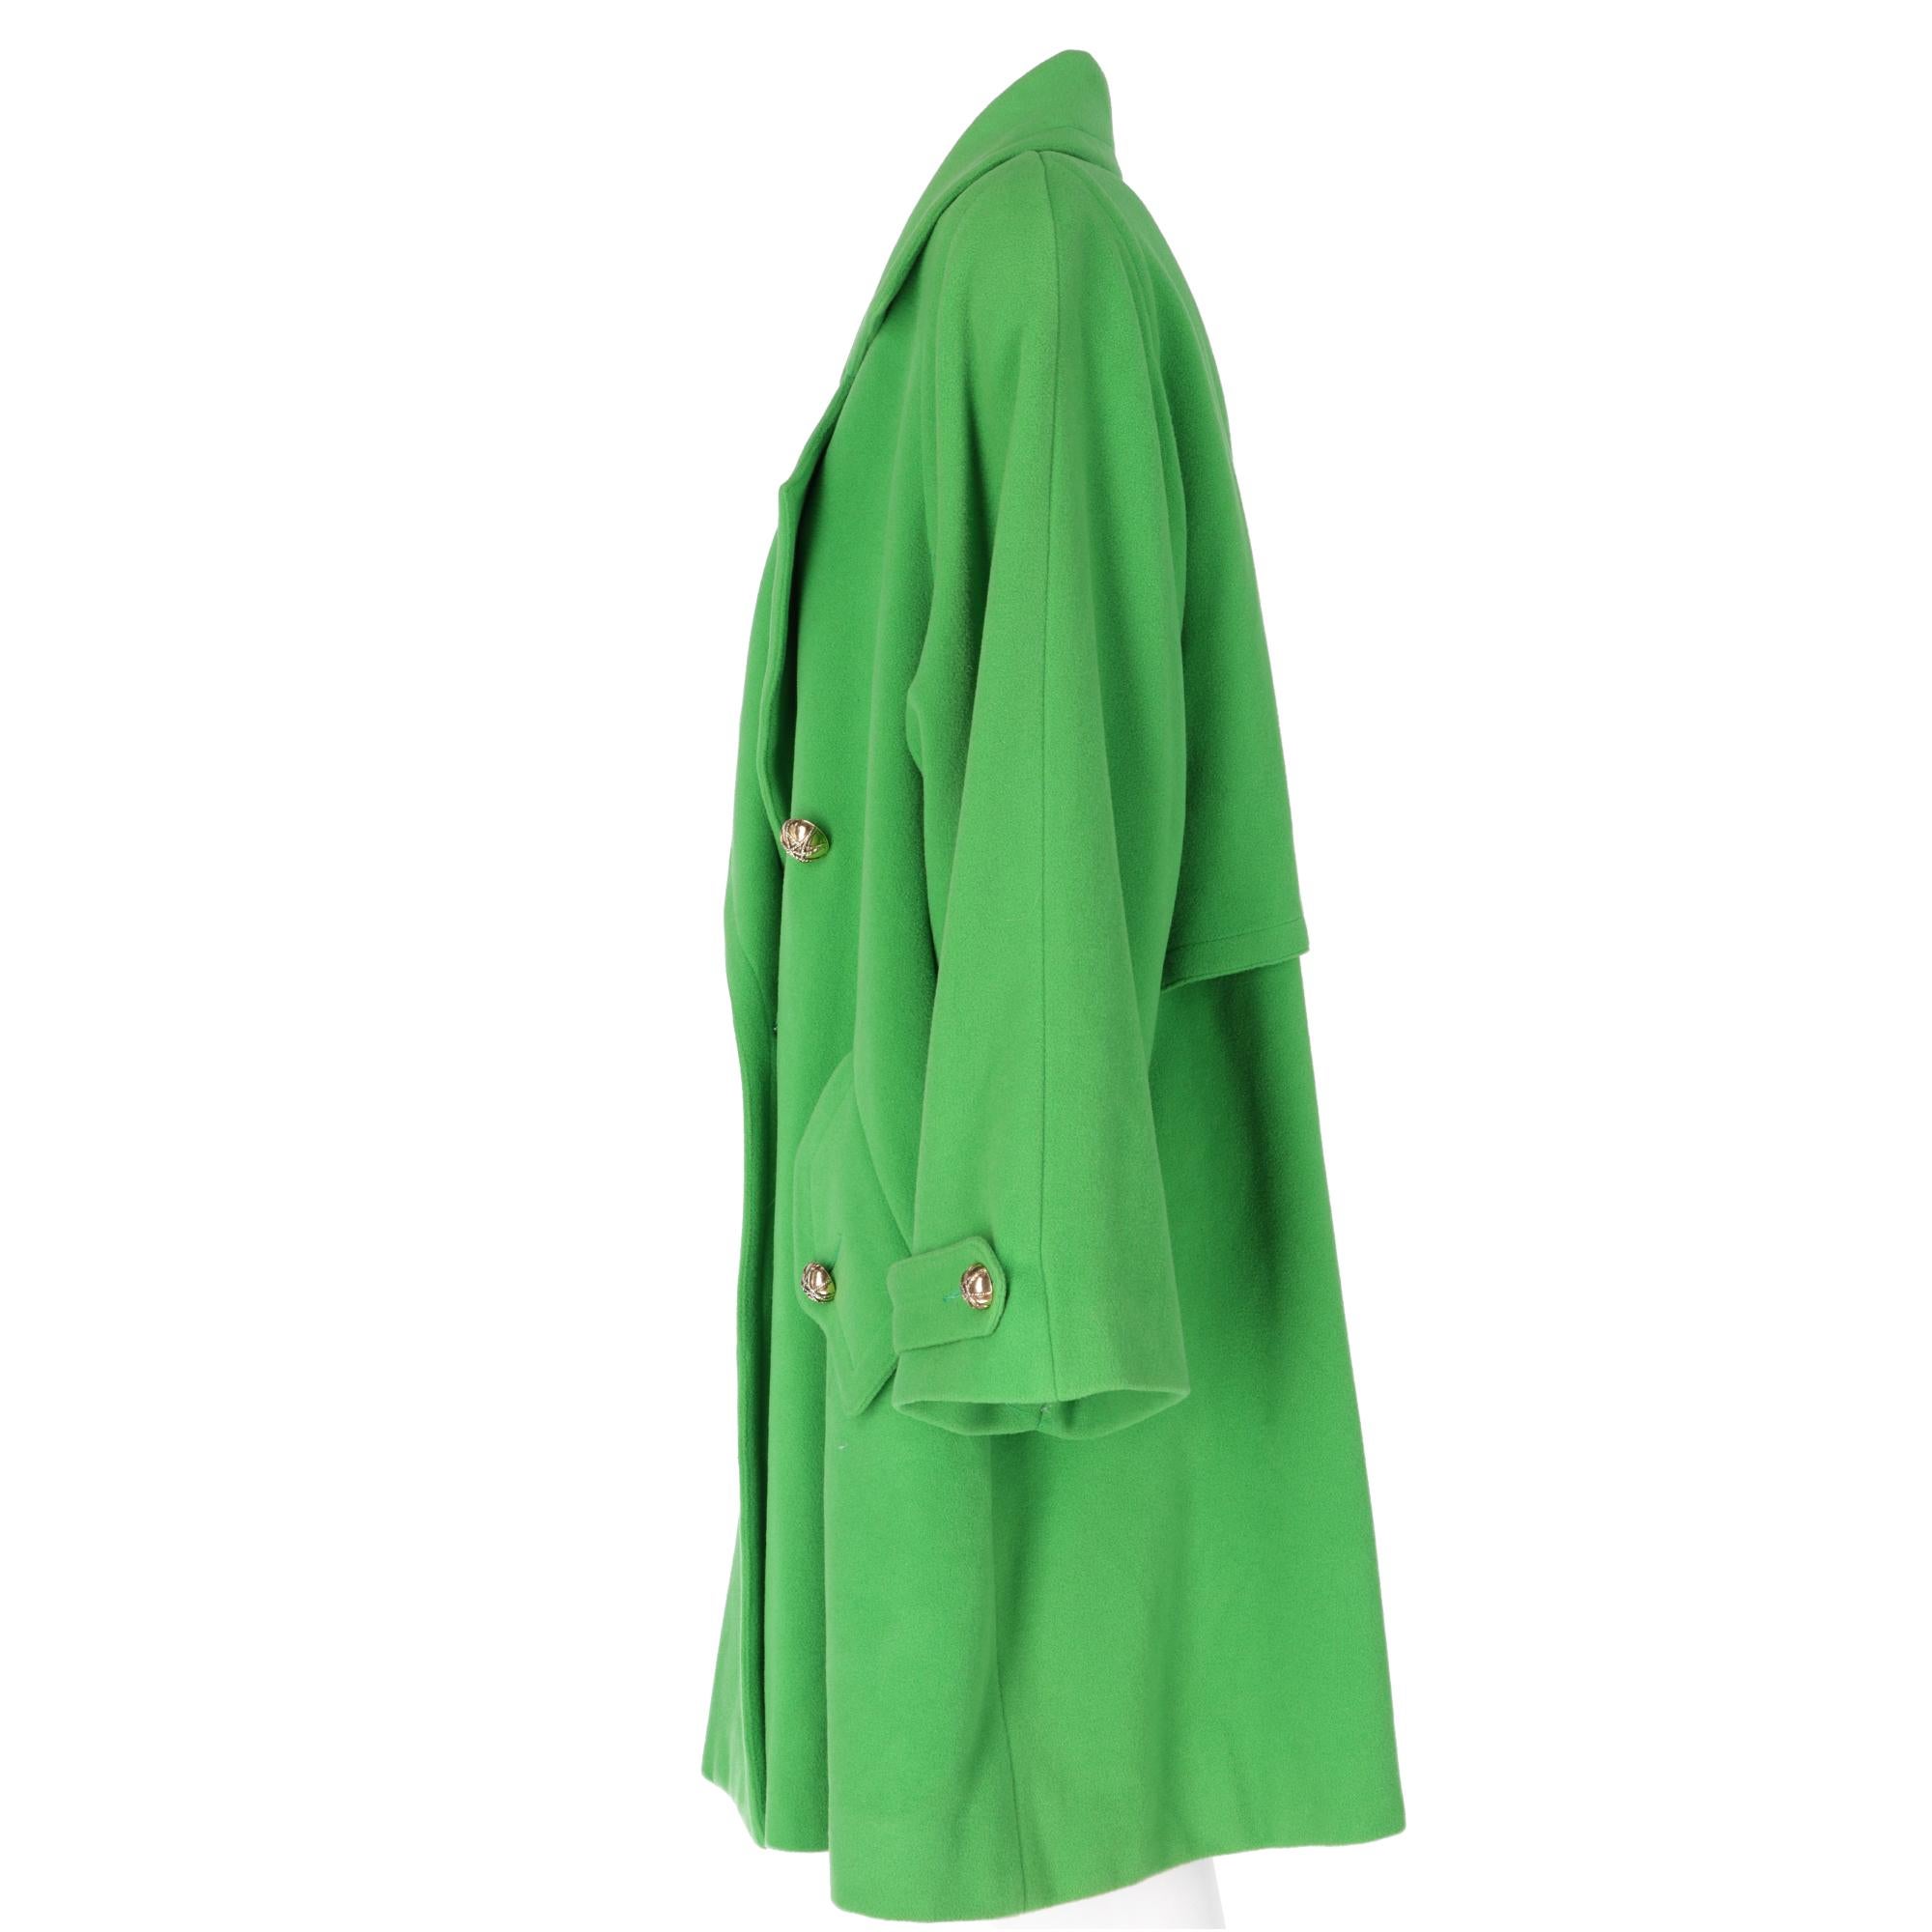 grass green coat